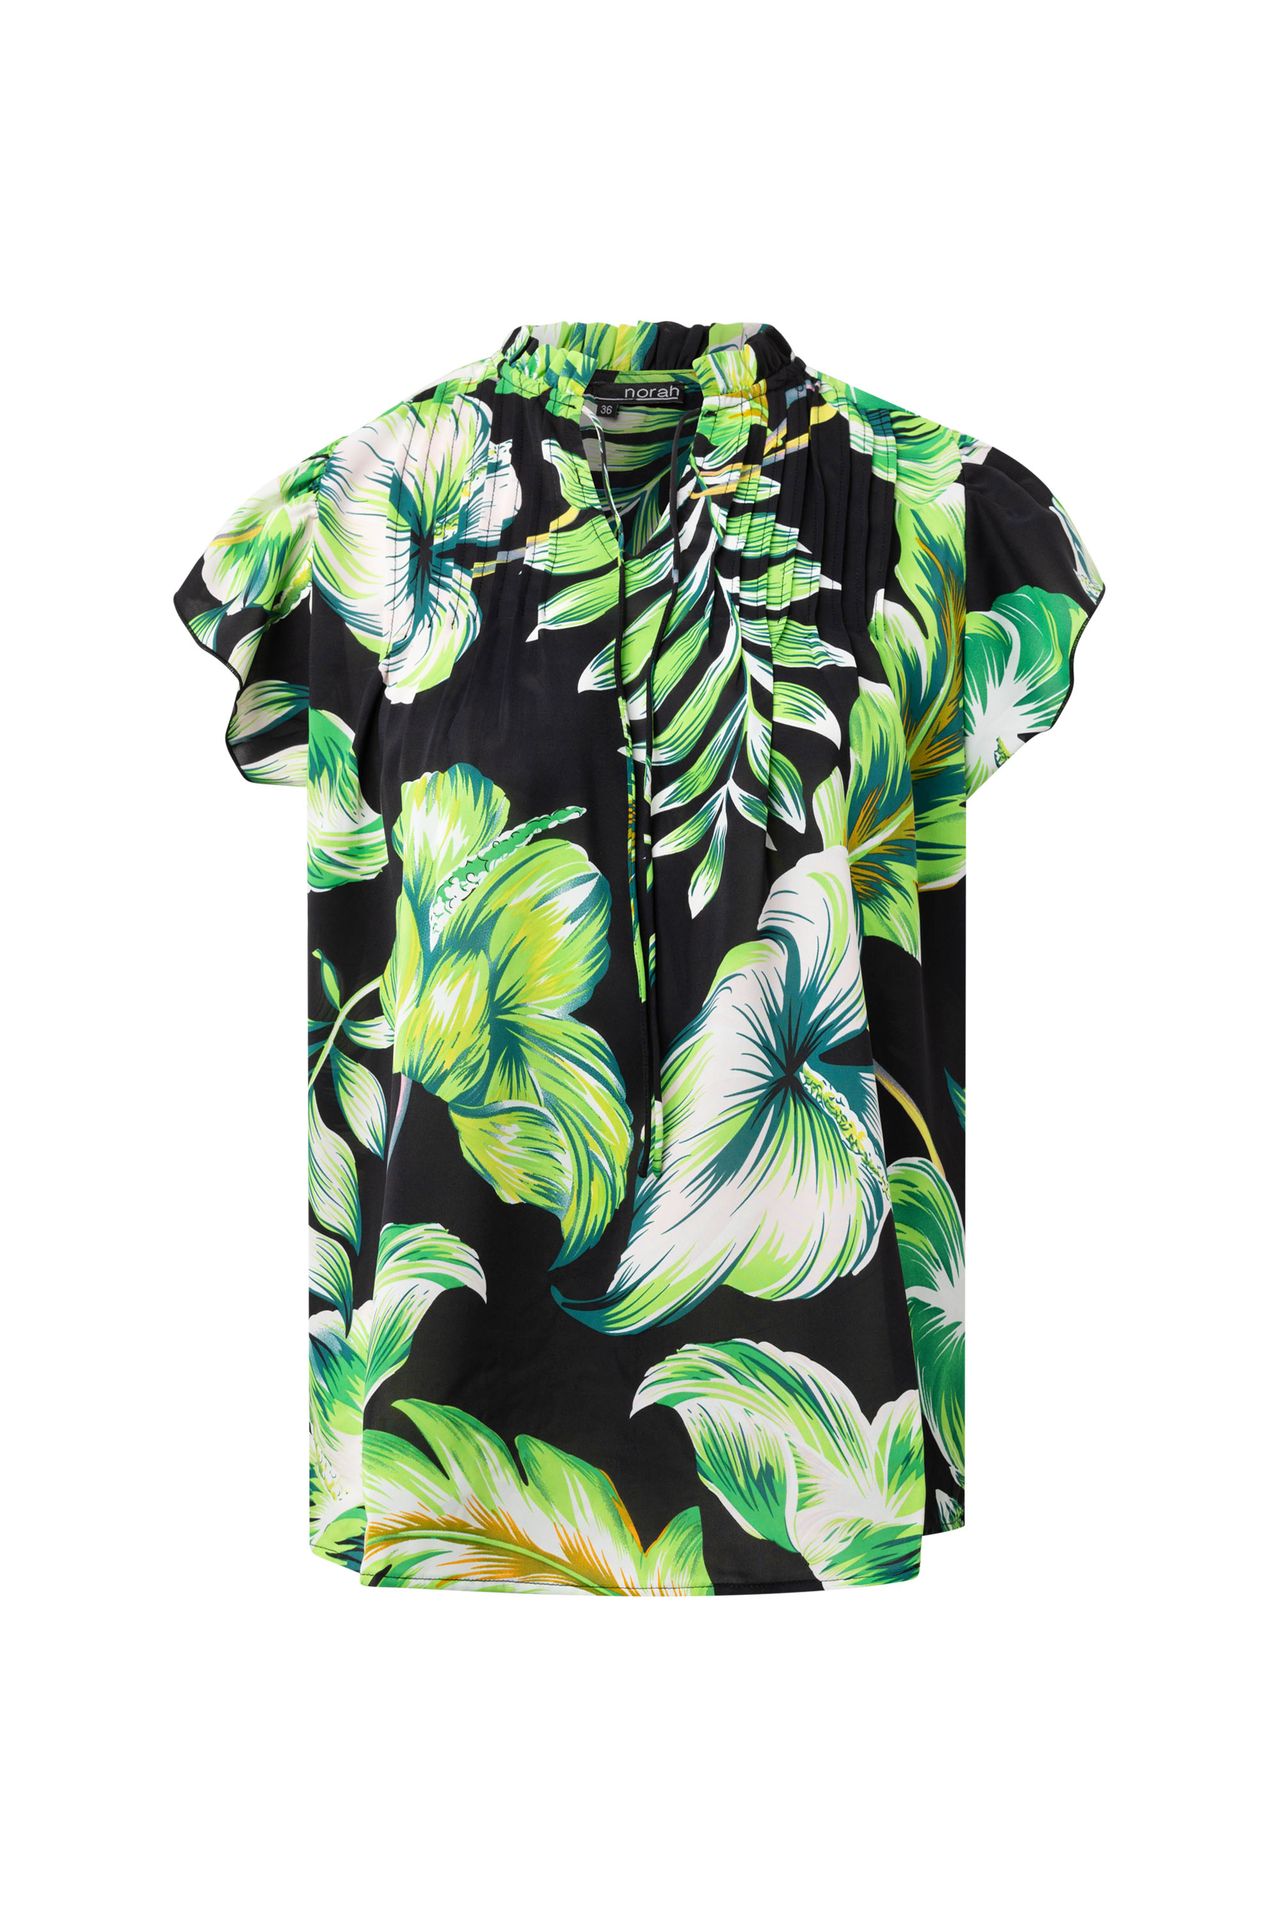 Norah Botanische blouse black multicolor 214421-020